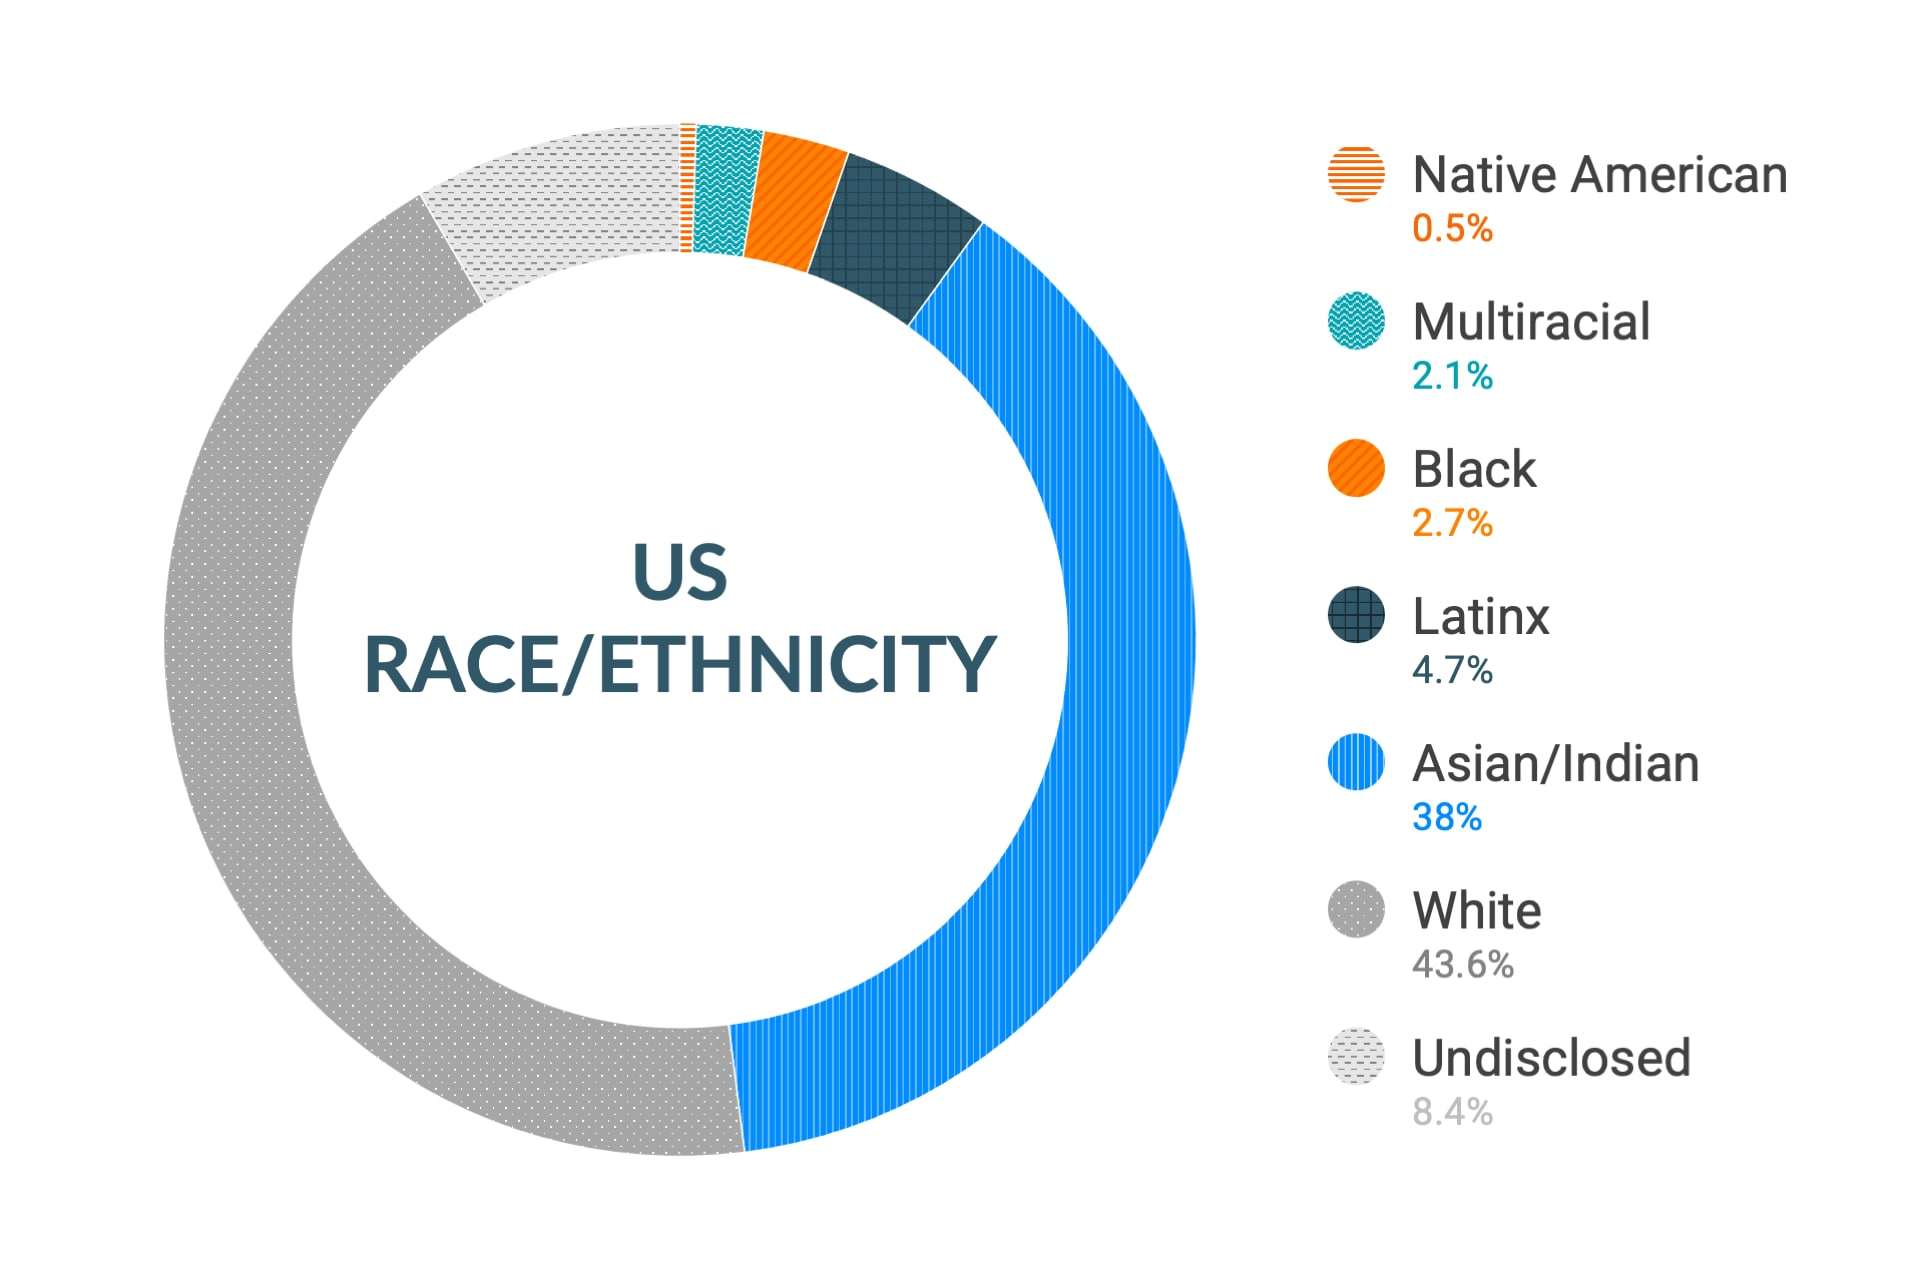 Dati Cloudera su diversità e inclusione etnica negli Stati Uniti: dipendenti nativi americani 0,5%, multietnici 2,0%, afroamericani 4,0%, latinoamericani 5,0%, asiatici e indiani 35,9%, bianchi 44,9%, non dichiarato 7,7%.